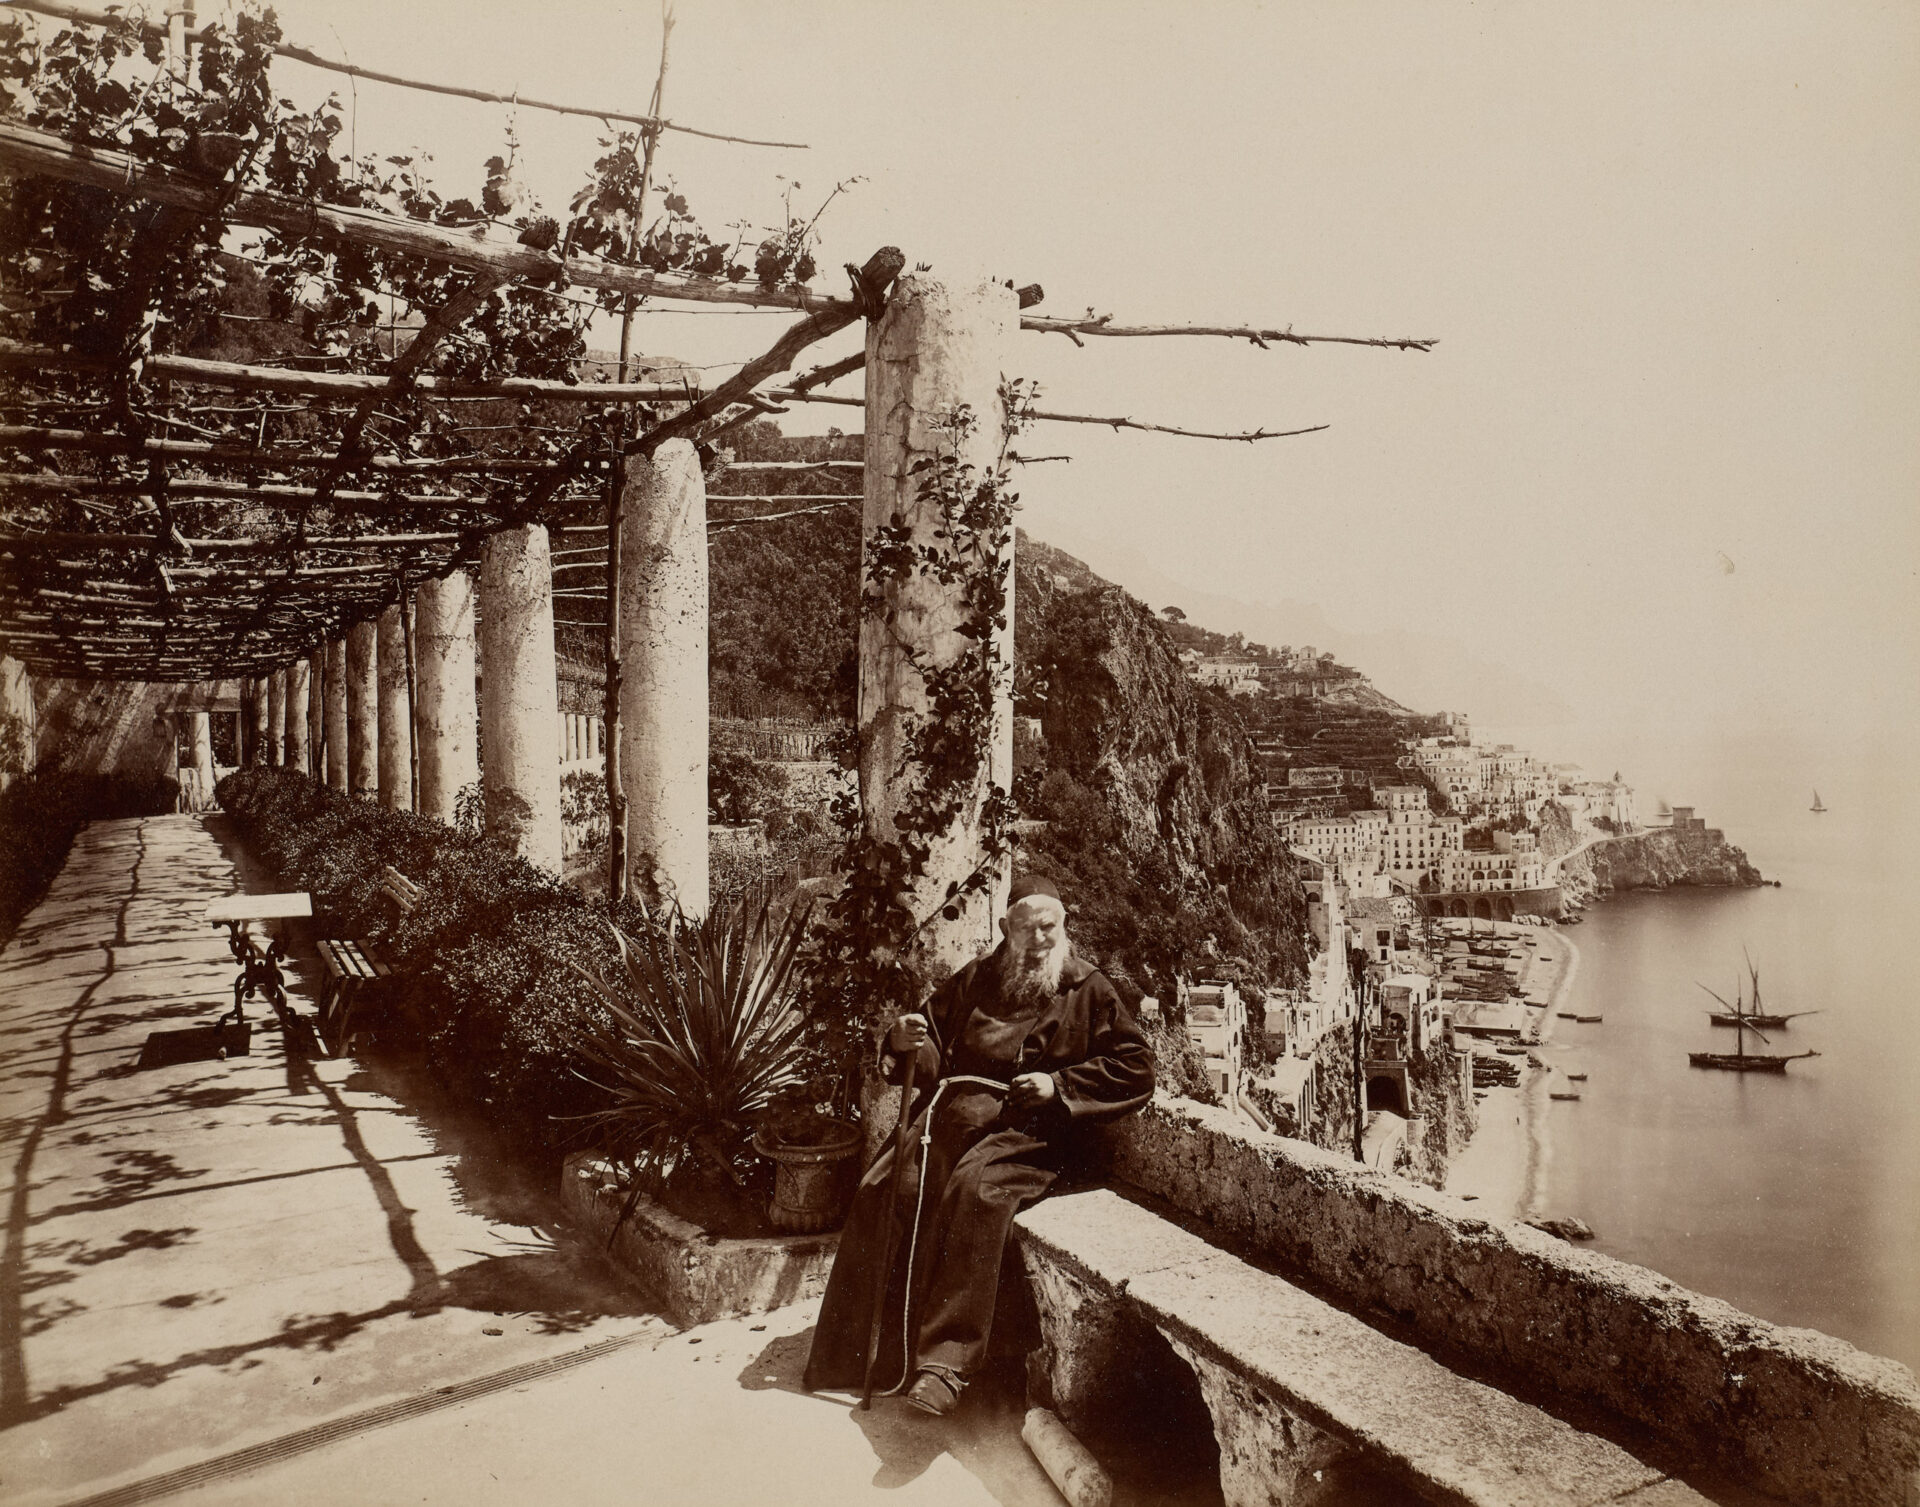 Giorgio Sommer, Amalfi, Grand Hôtel, vormals Convento dei Cappuccini, um 1880–1890, Albuminpapier auf Karton, Städel Museum, Frankfurt am Main, Public Domain